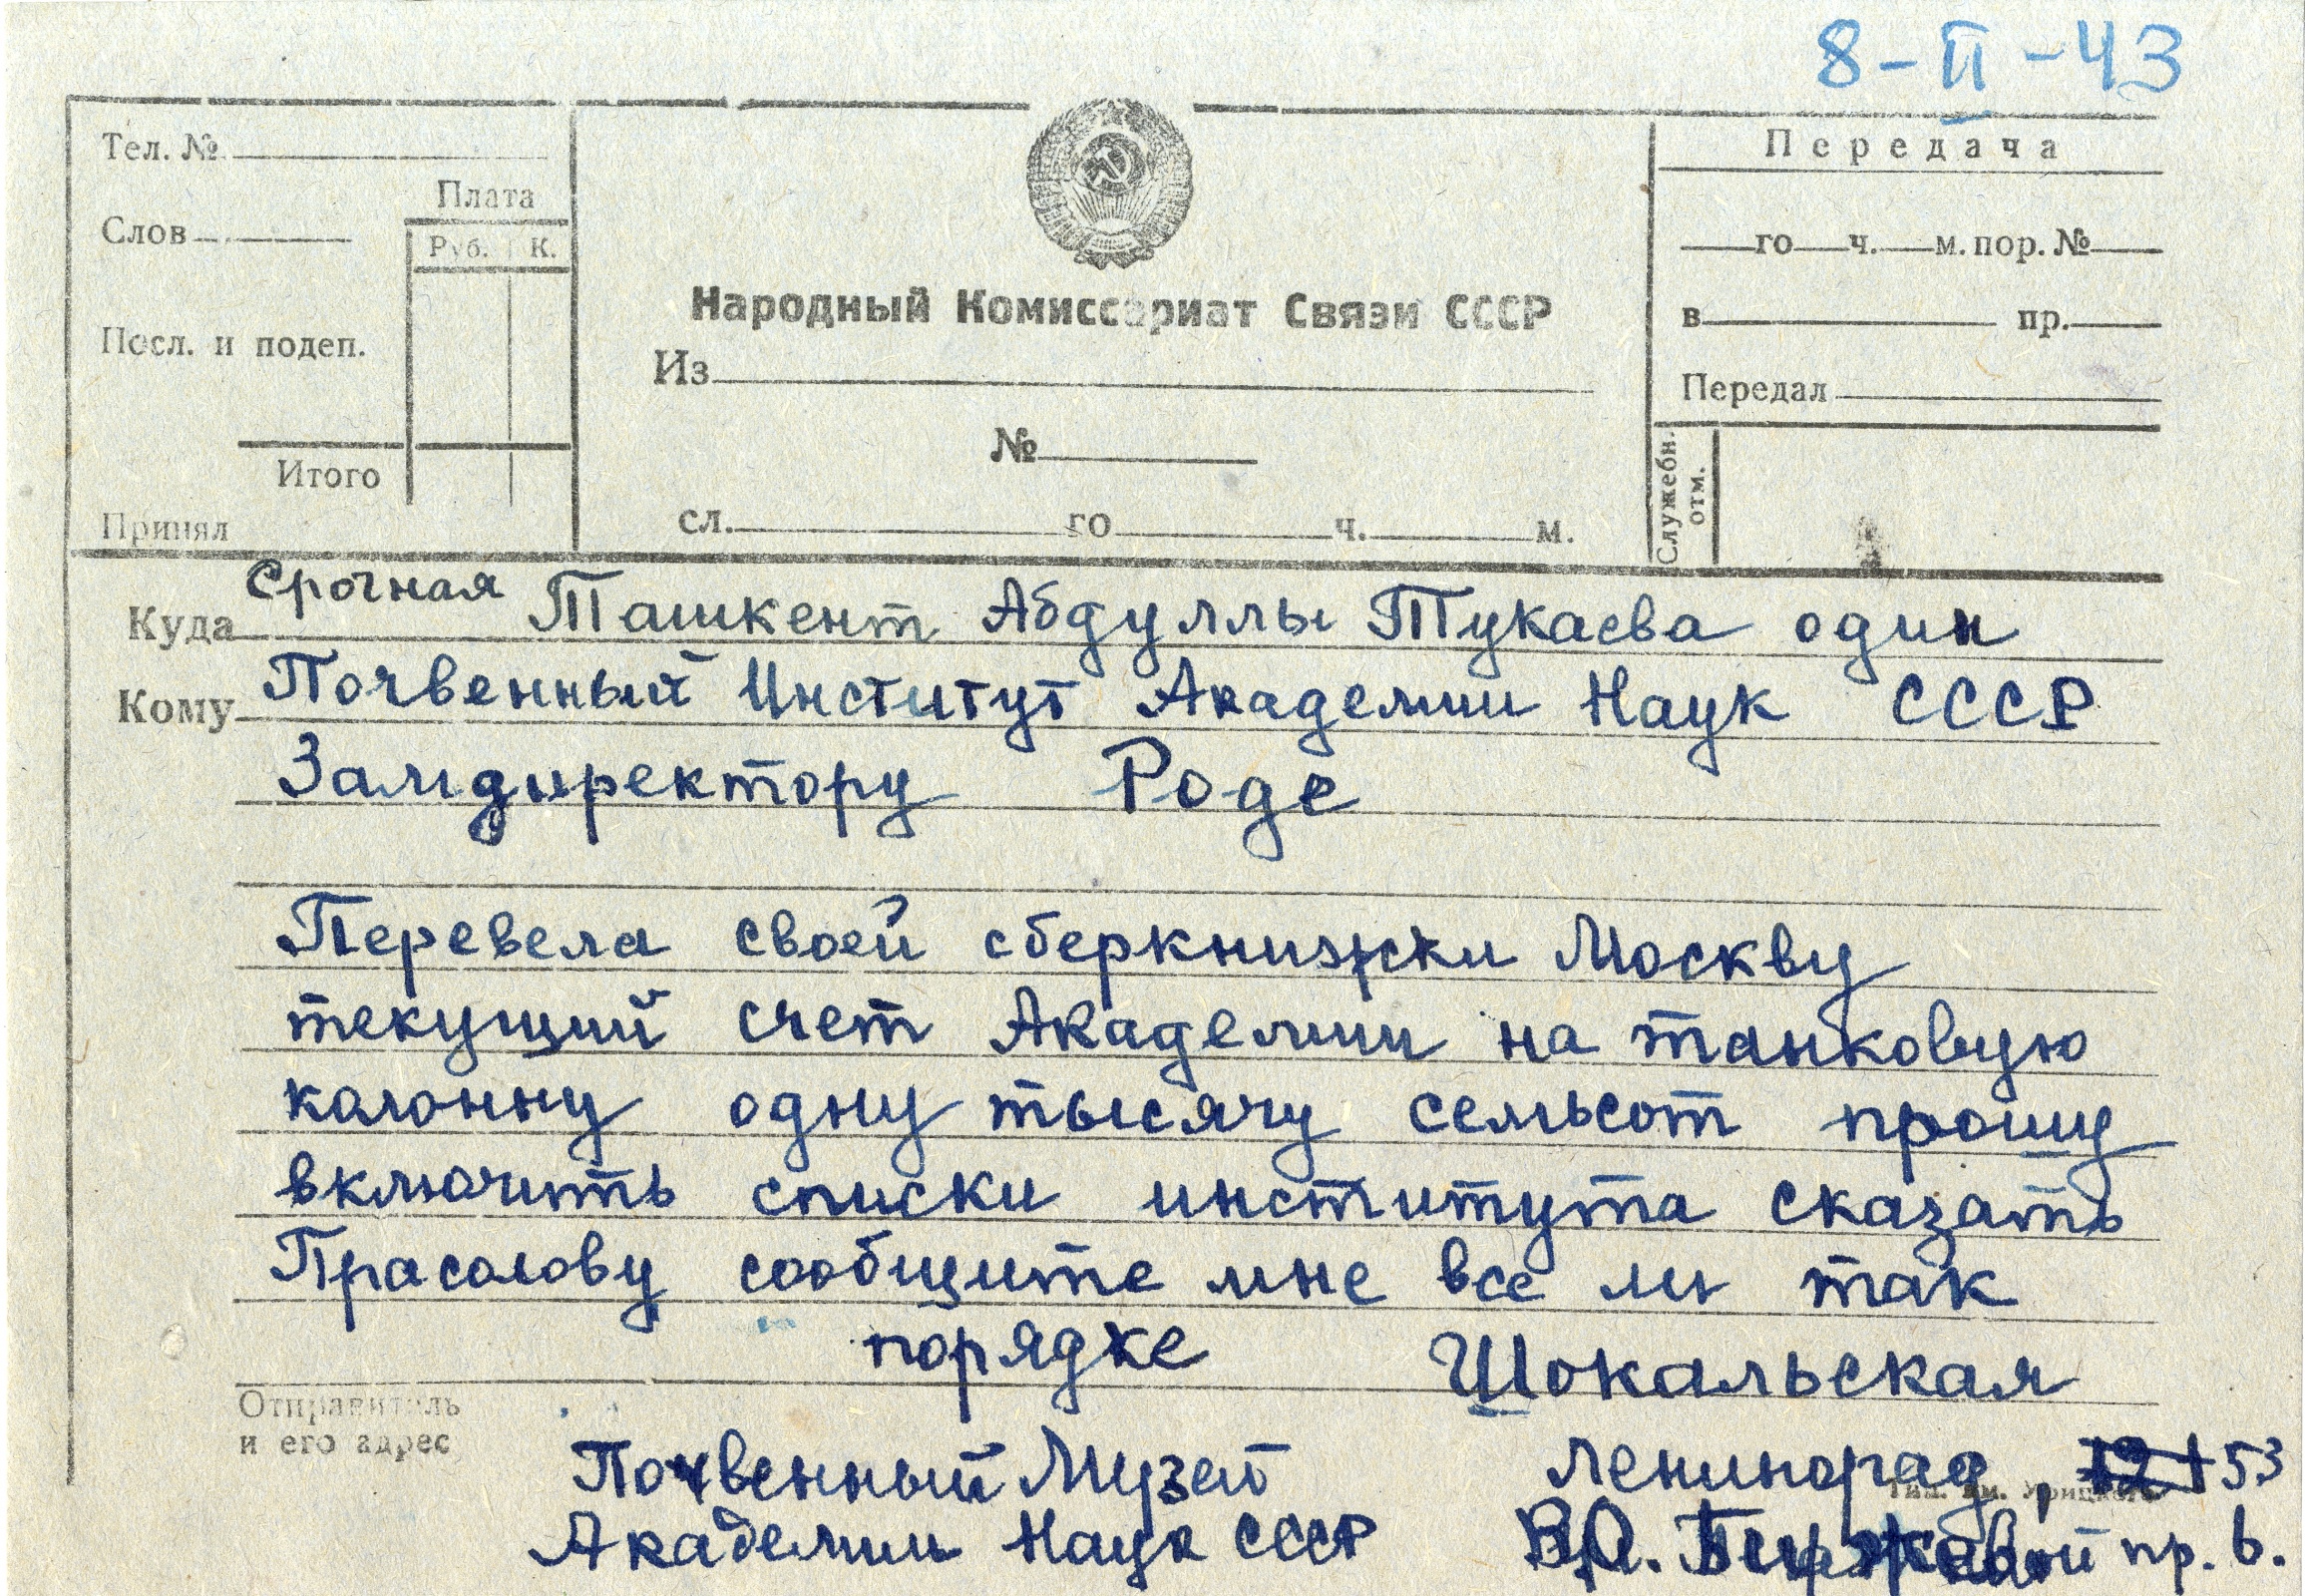 Телеграмма З.Ю. Шокальской. Фото: Научный архив РГО